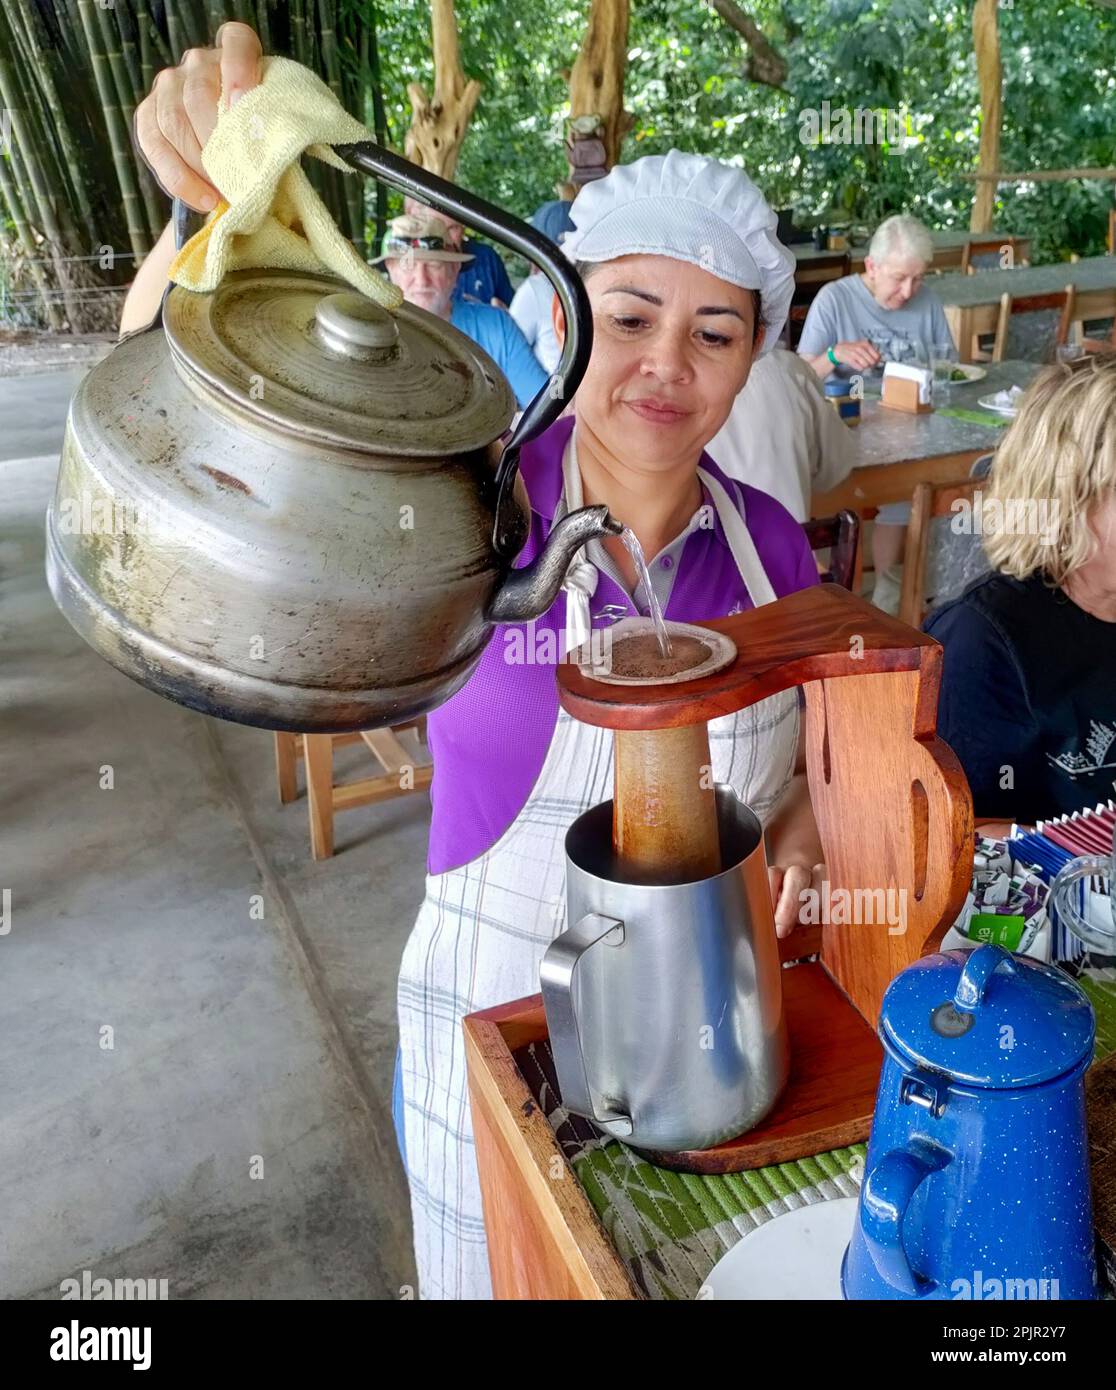 La Fortuna, Costa Rica - Un ouvrier prépare du café pour le déjeuner à Finca Educativa Don Juan (Don Juan Educativa Farm). Les clients aident à préparer le repas, qui Banque D'Images